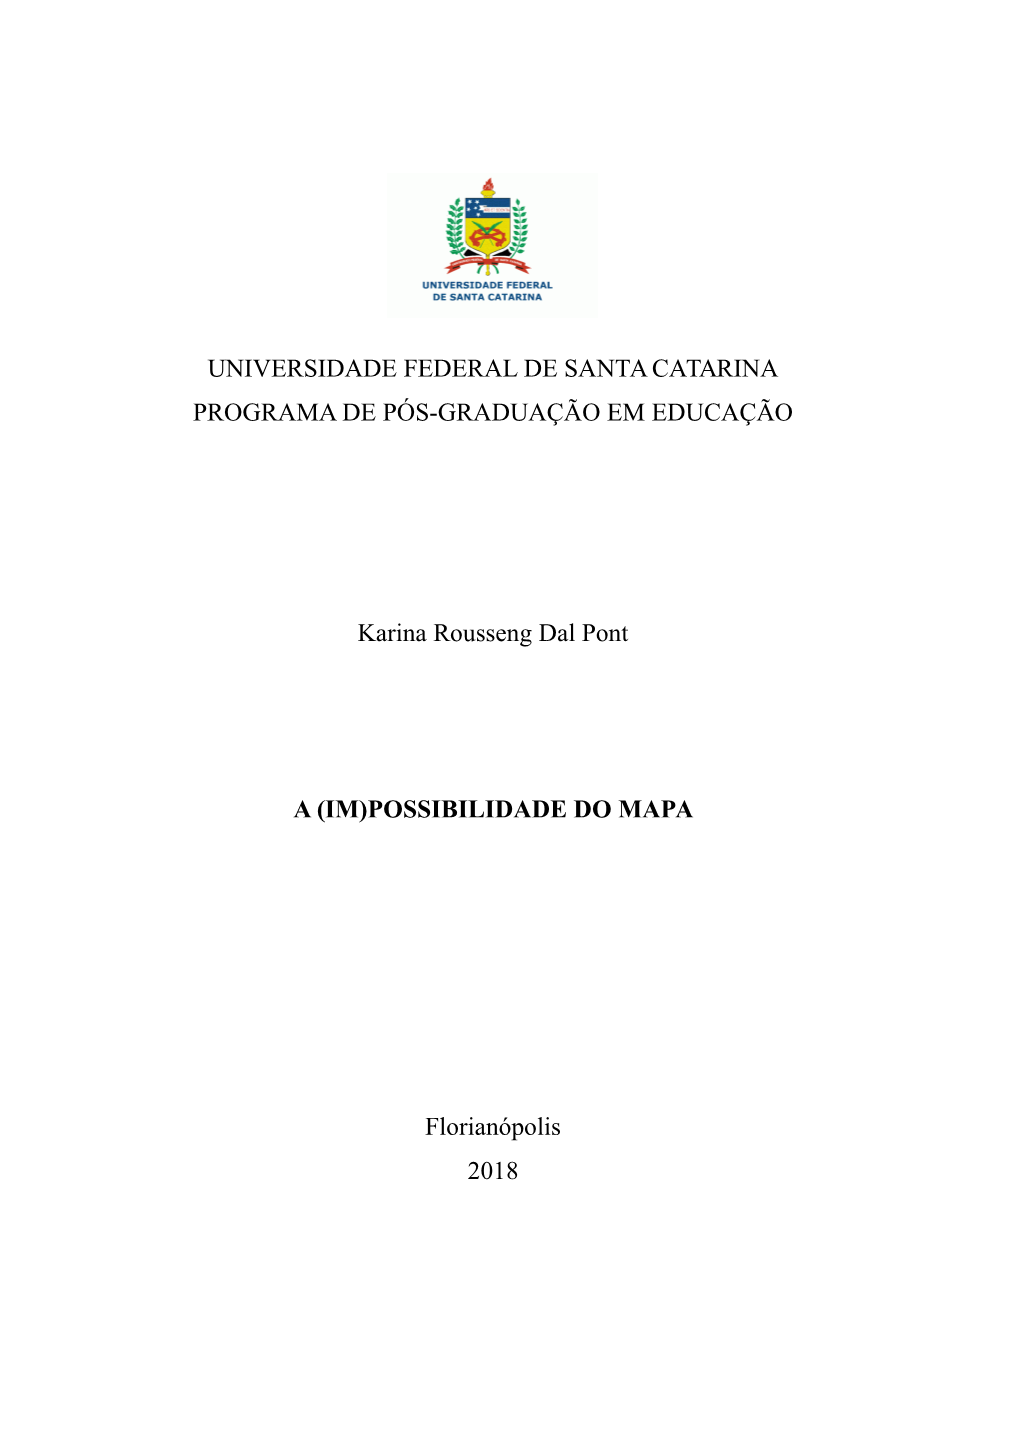 UNIVERSIDADE FEDERAL DE SANTA CATARINA PROGRAMA DE PÓS-GRADUAÇÃO EM EDUCAÇÃO Karina Rousseng Dal Pont a (IM)POSSIBILIDADE D